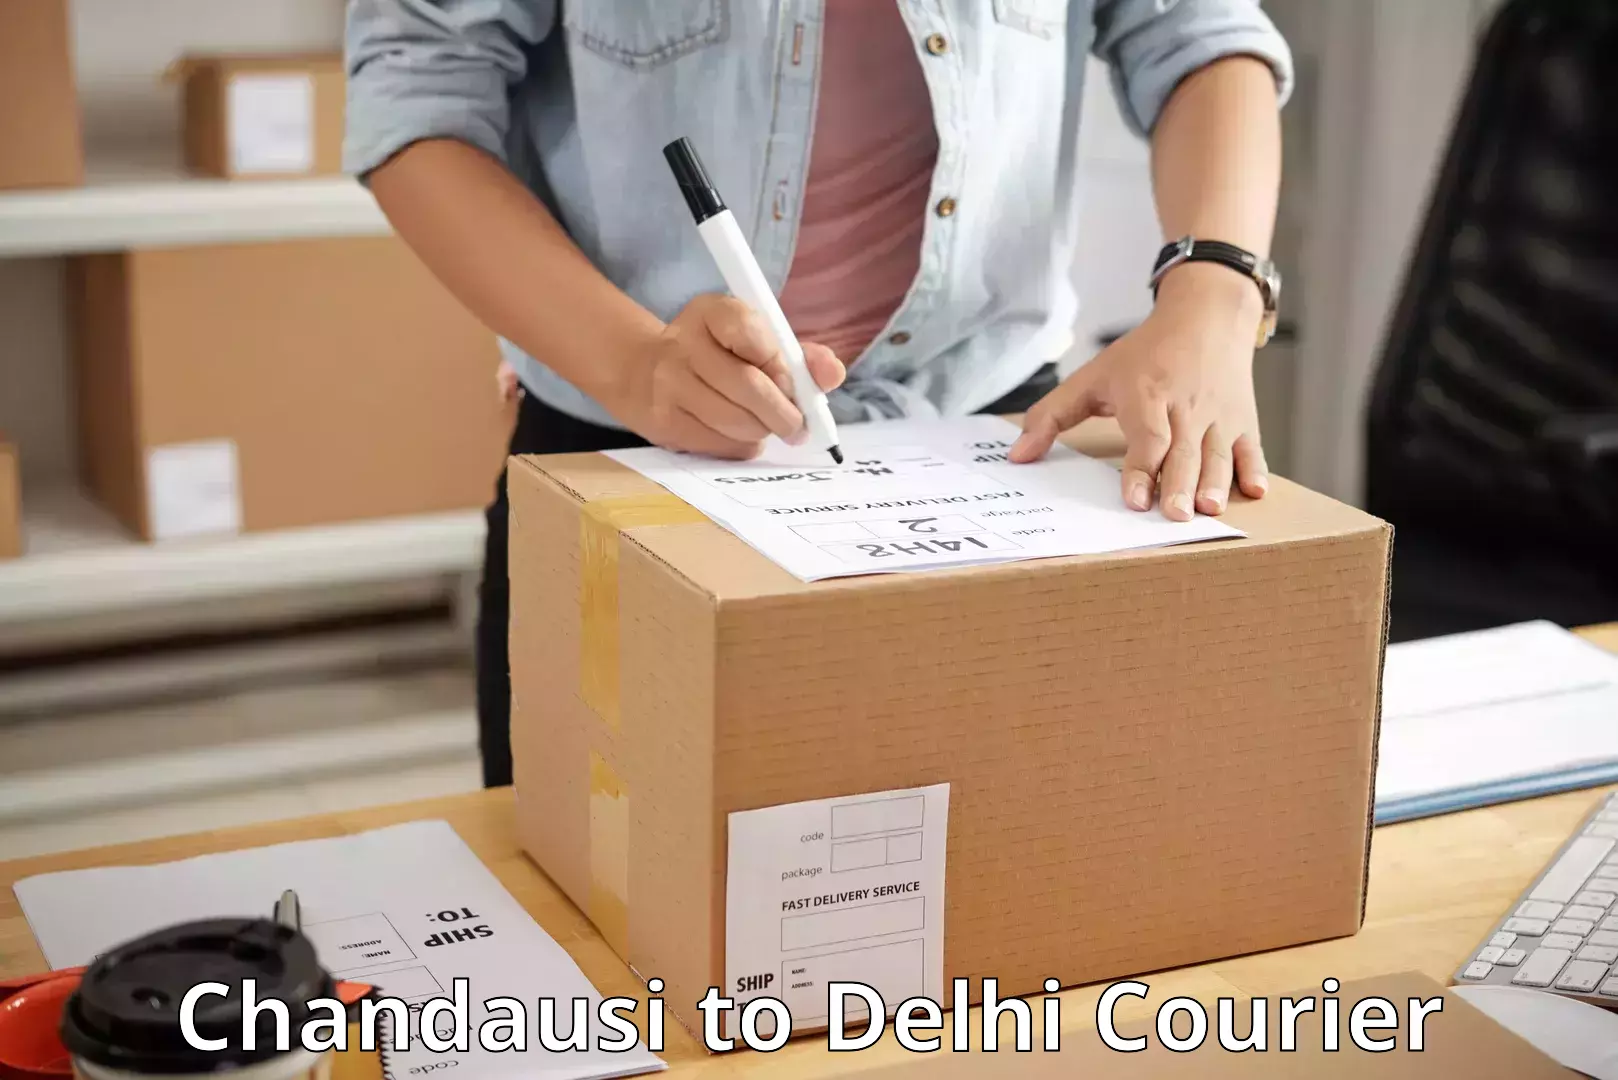 Multi-national courier services Chandausi to Jamia Millia Islamia New Delhi